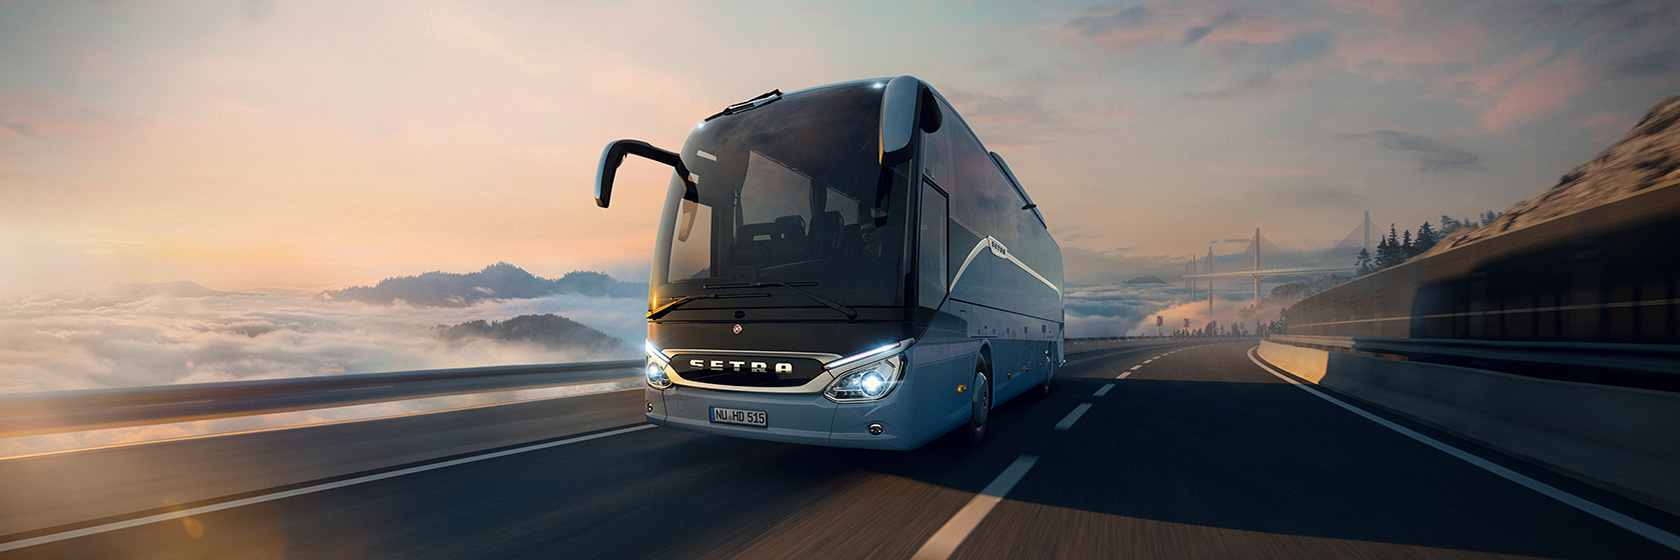 Daimler Buses Sverige AB - Evobus Sverige Aktiebolag